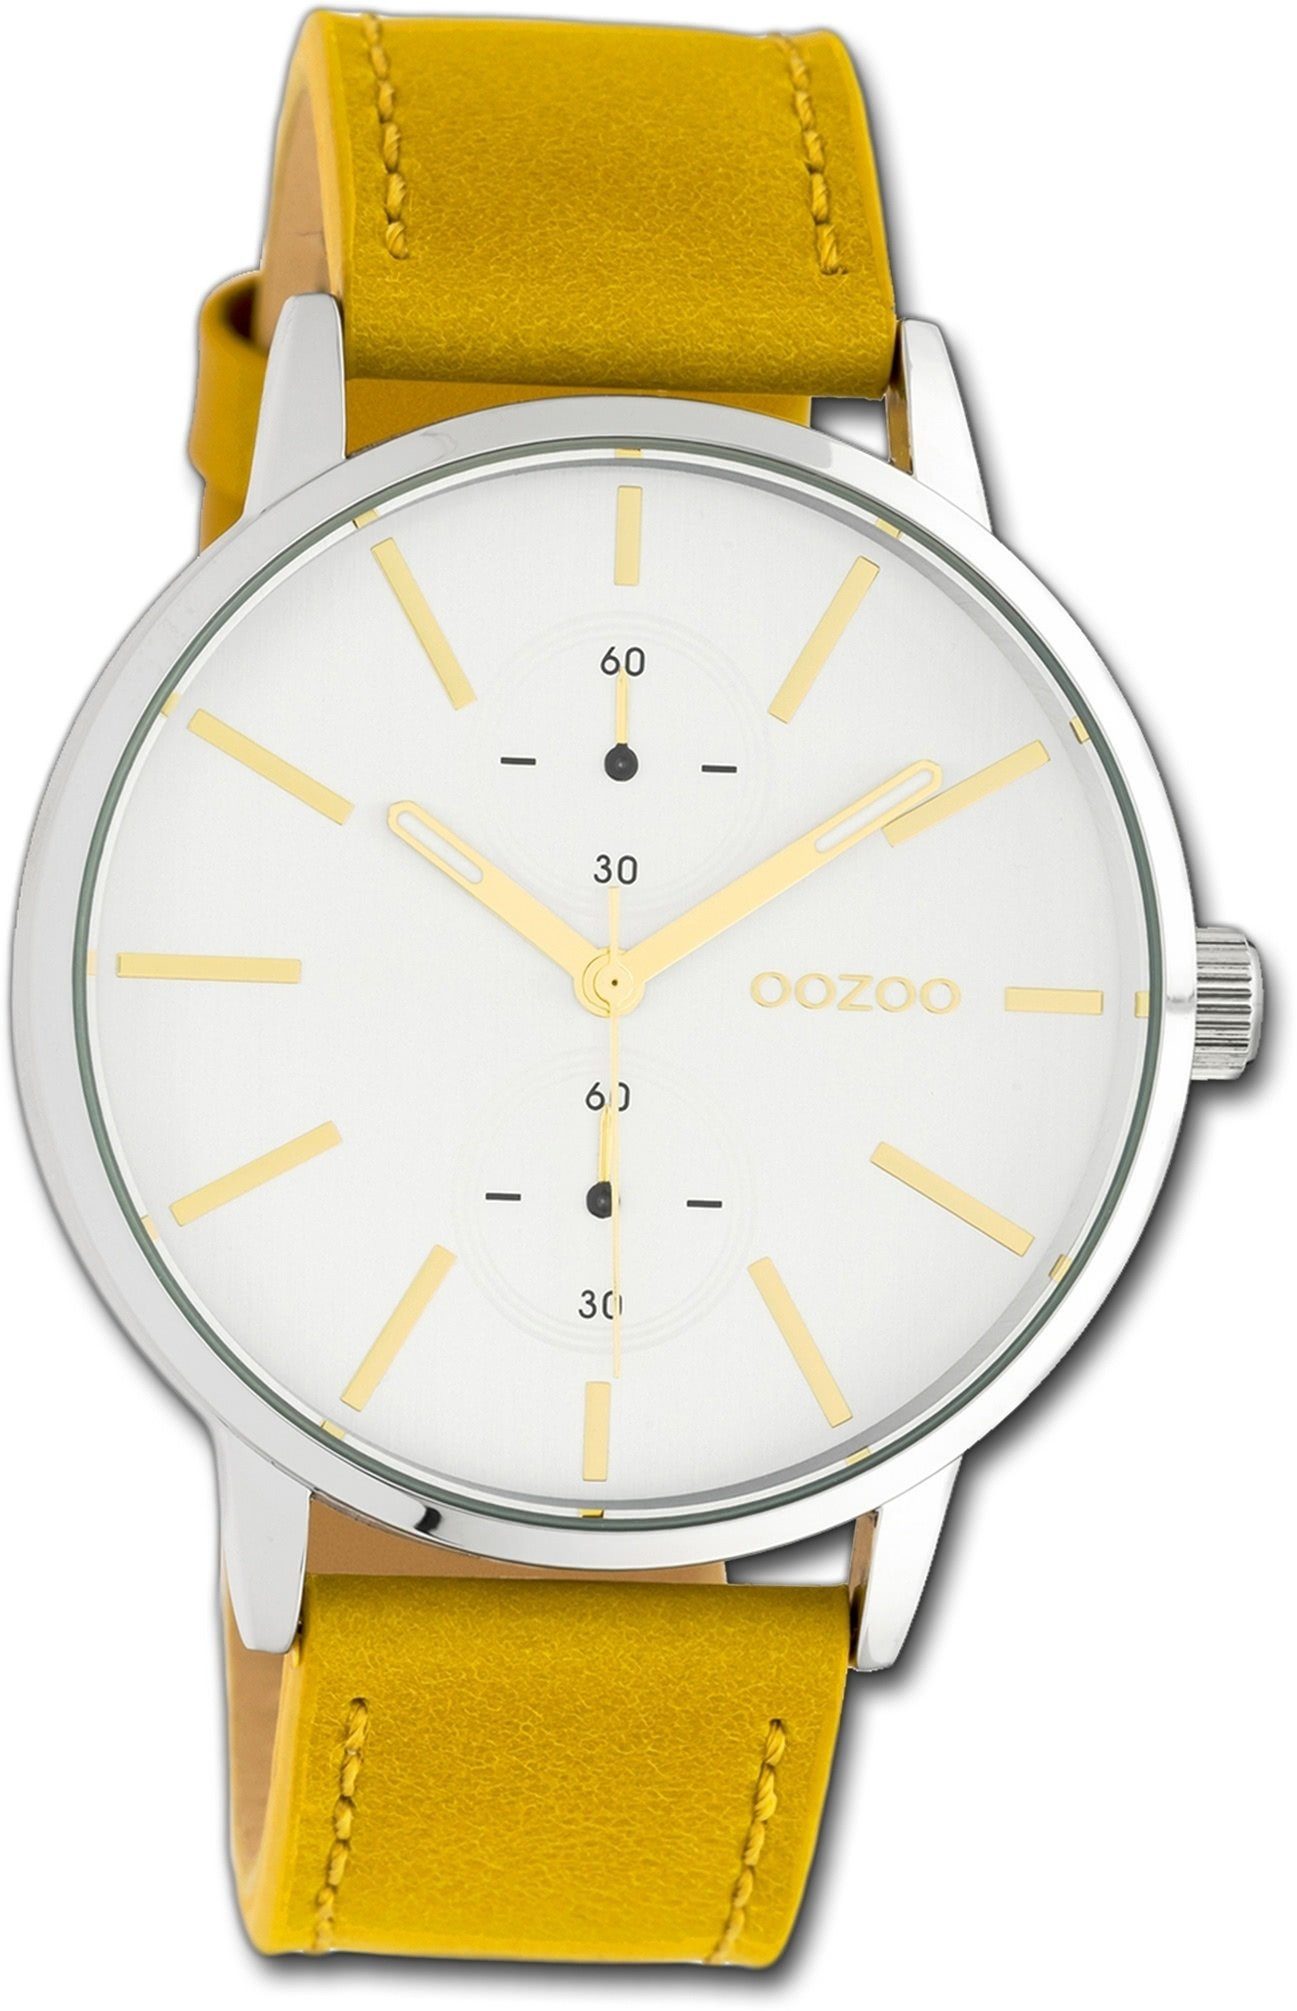 OOZOO Quarzuhr Oozoo Leder Damen Uhr C10585 Analog, Damenuhr Lederarmband gelb, rundes Gehäuse, groß (ca. 42mm)